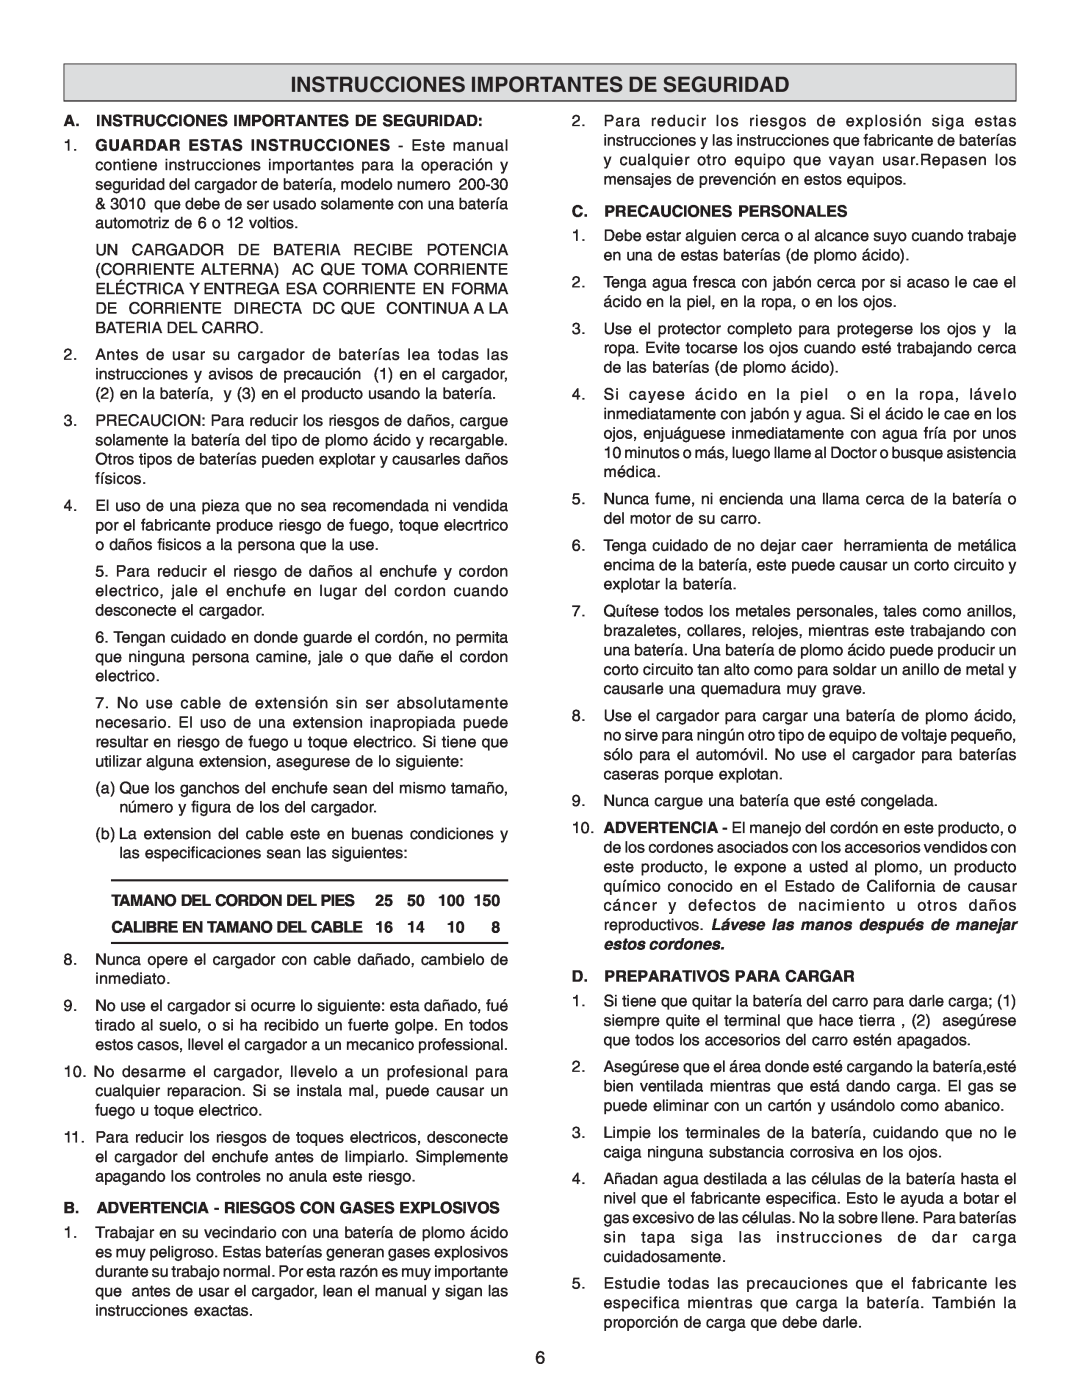 Schumacher 3010 A. Instrucciones Importantes De Seguridad, Tamano Del Cordon Del Pies, Calibre En Tamano Del Cable 